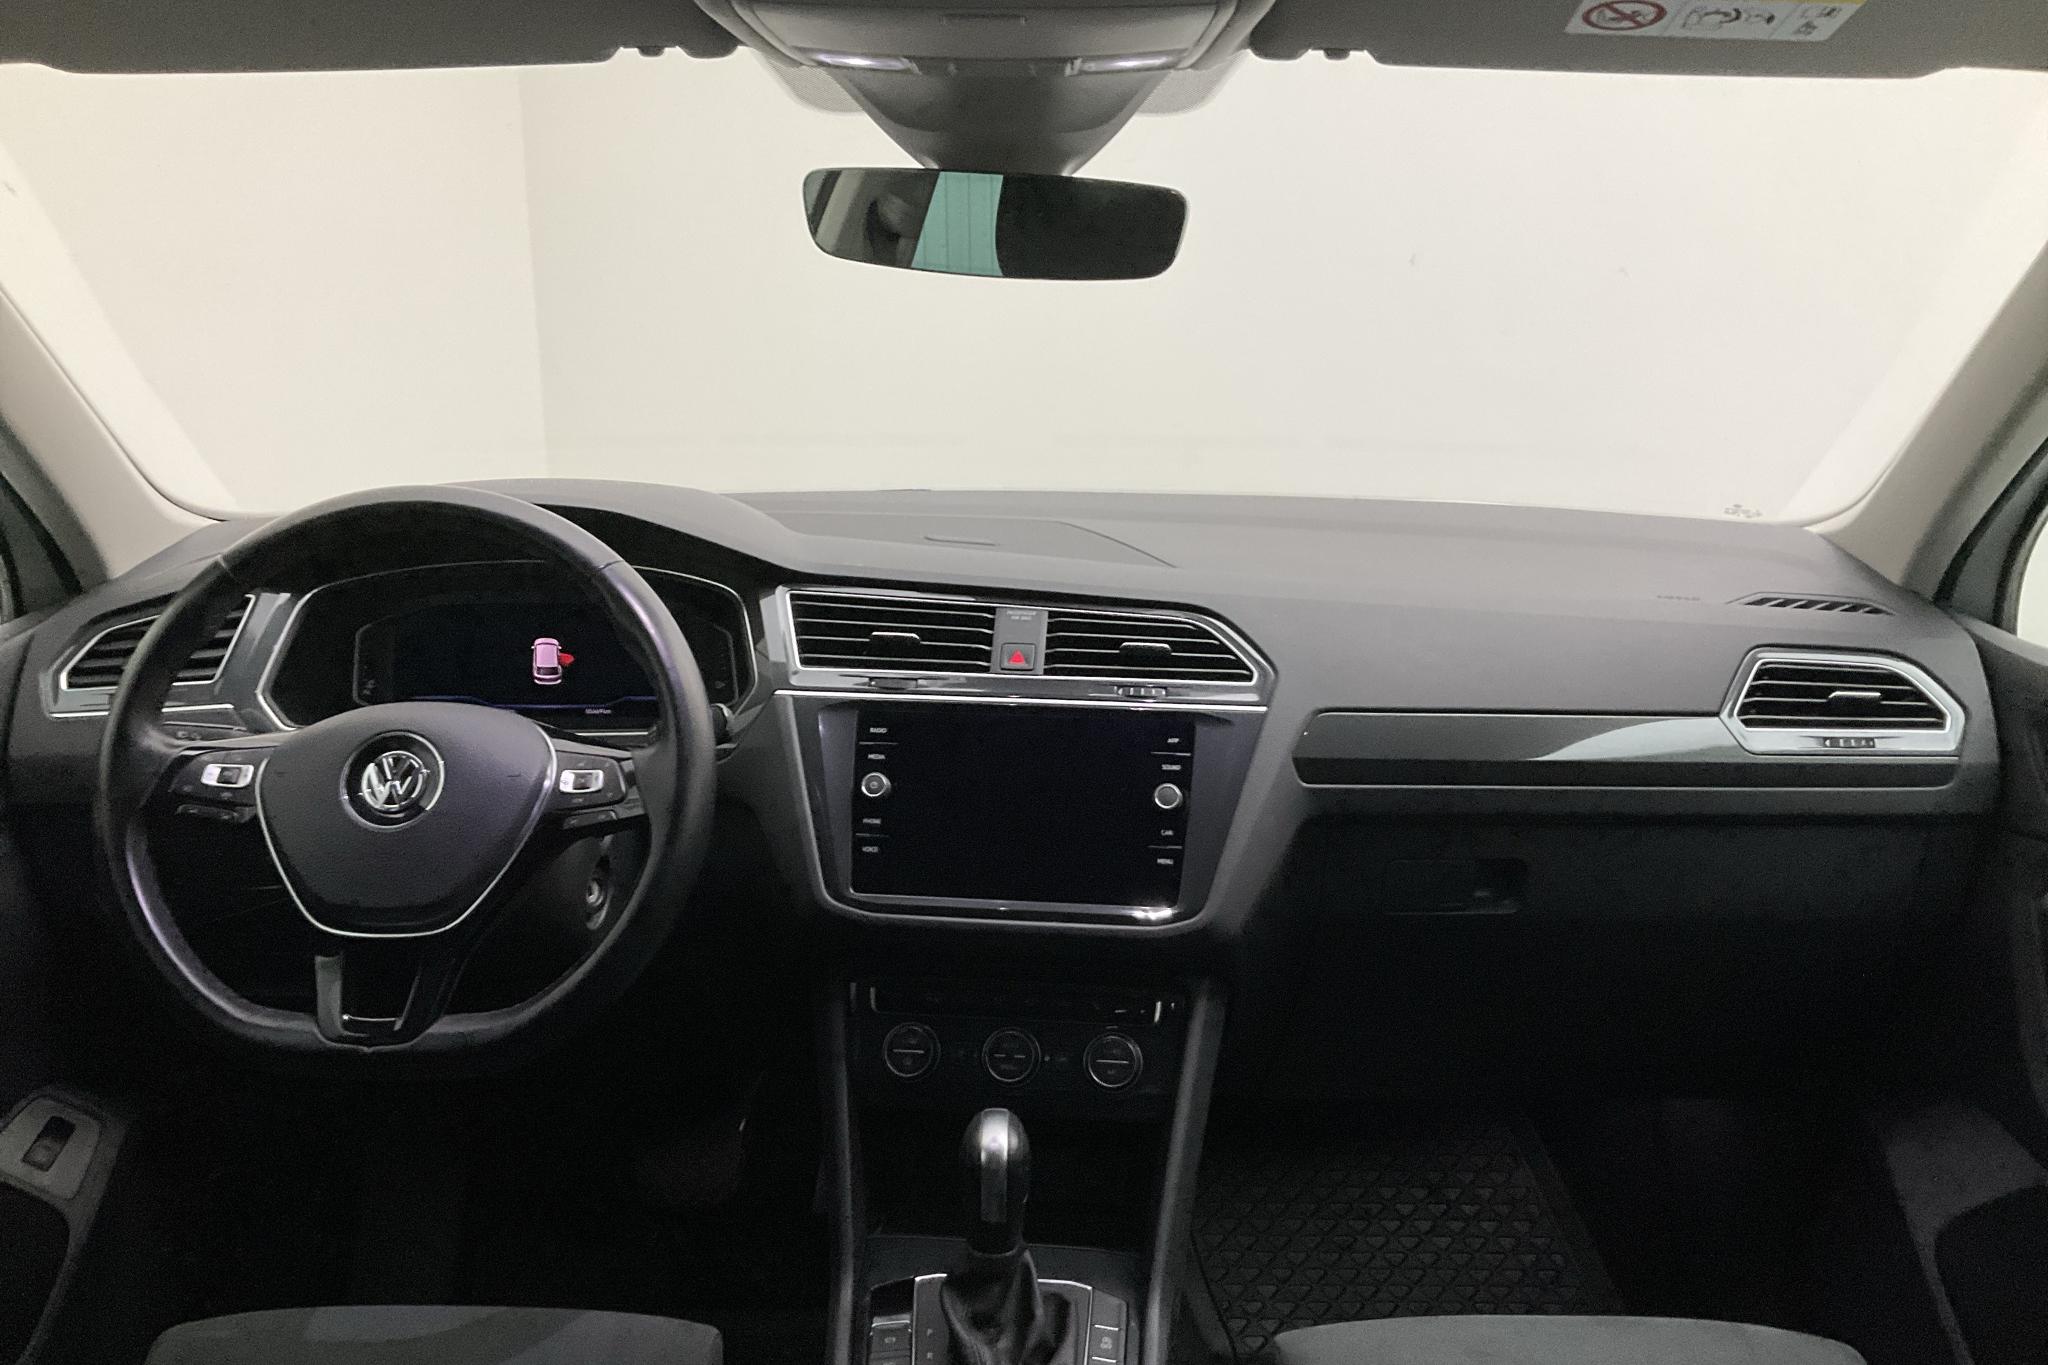 VW Tiguan 2.0 TDI 4MOTION (190hk) - 85 470 km - Automatic - white - 2020